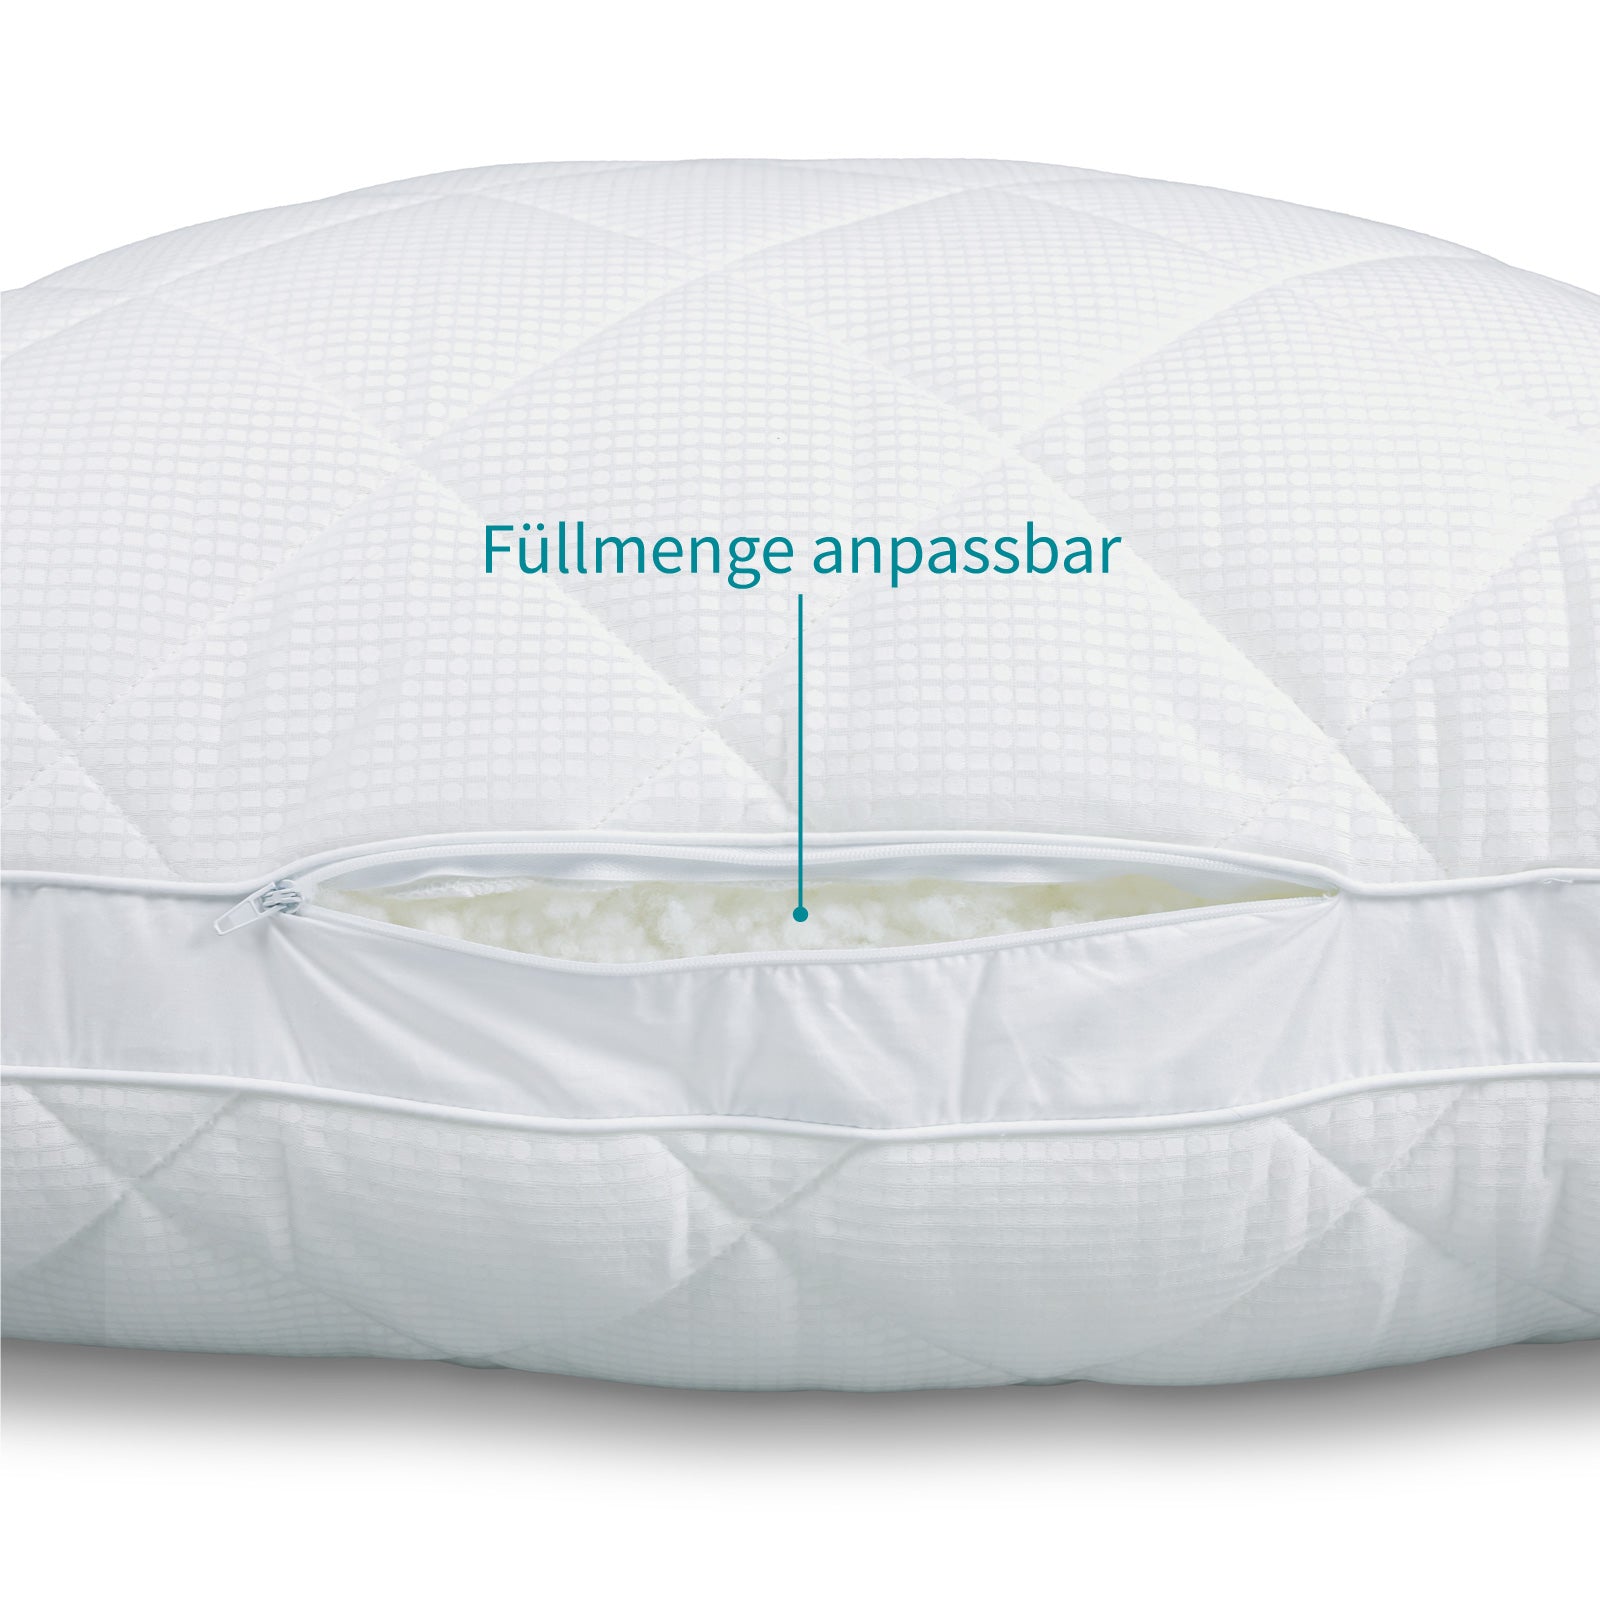 Temperature-regulating pillow COOL.CLOUD – climate-regulating pillow - sweat less, freeze less, sleep better